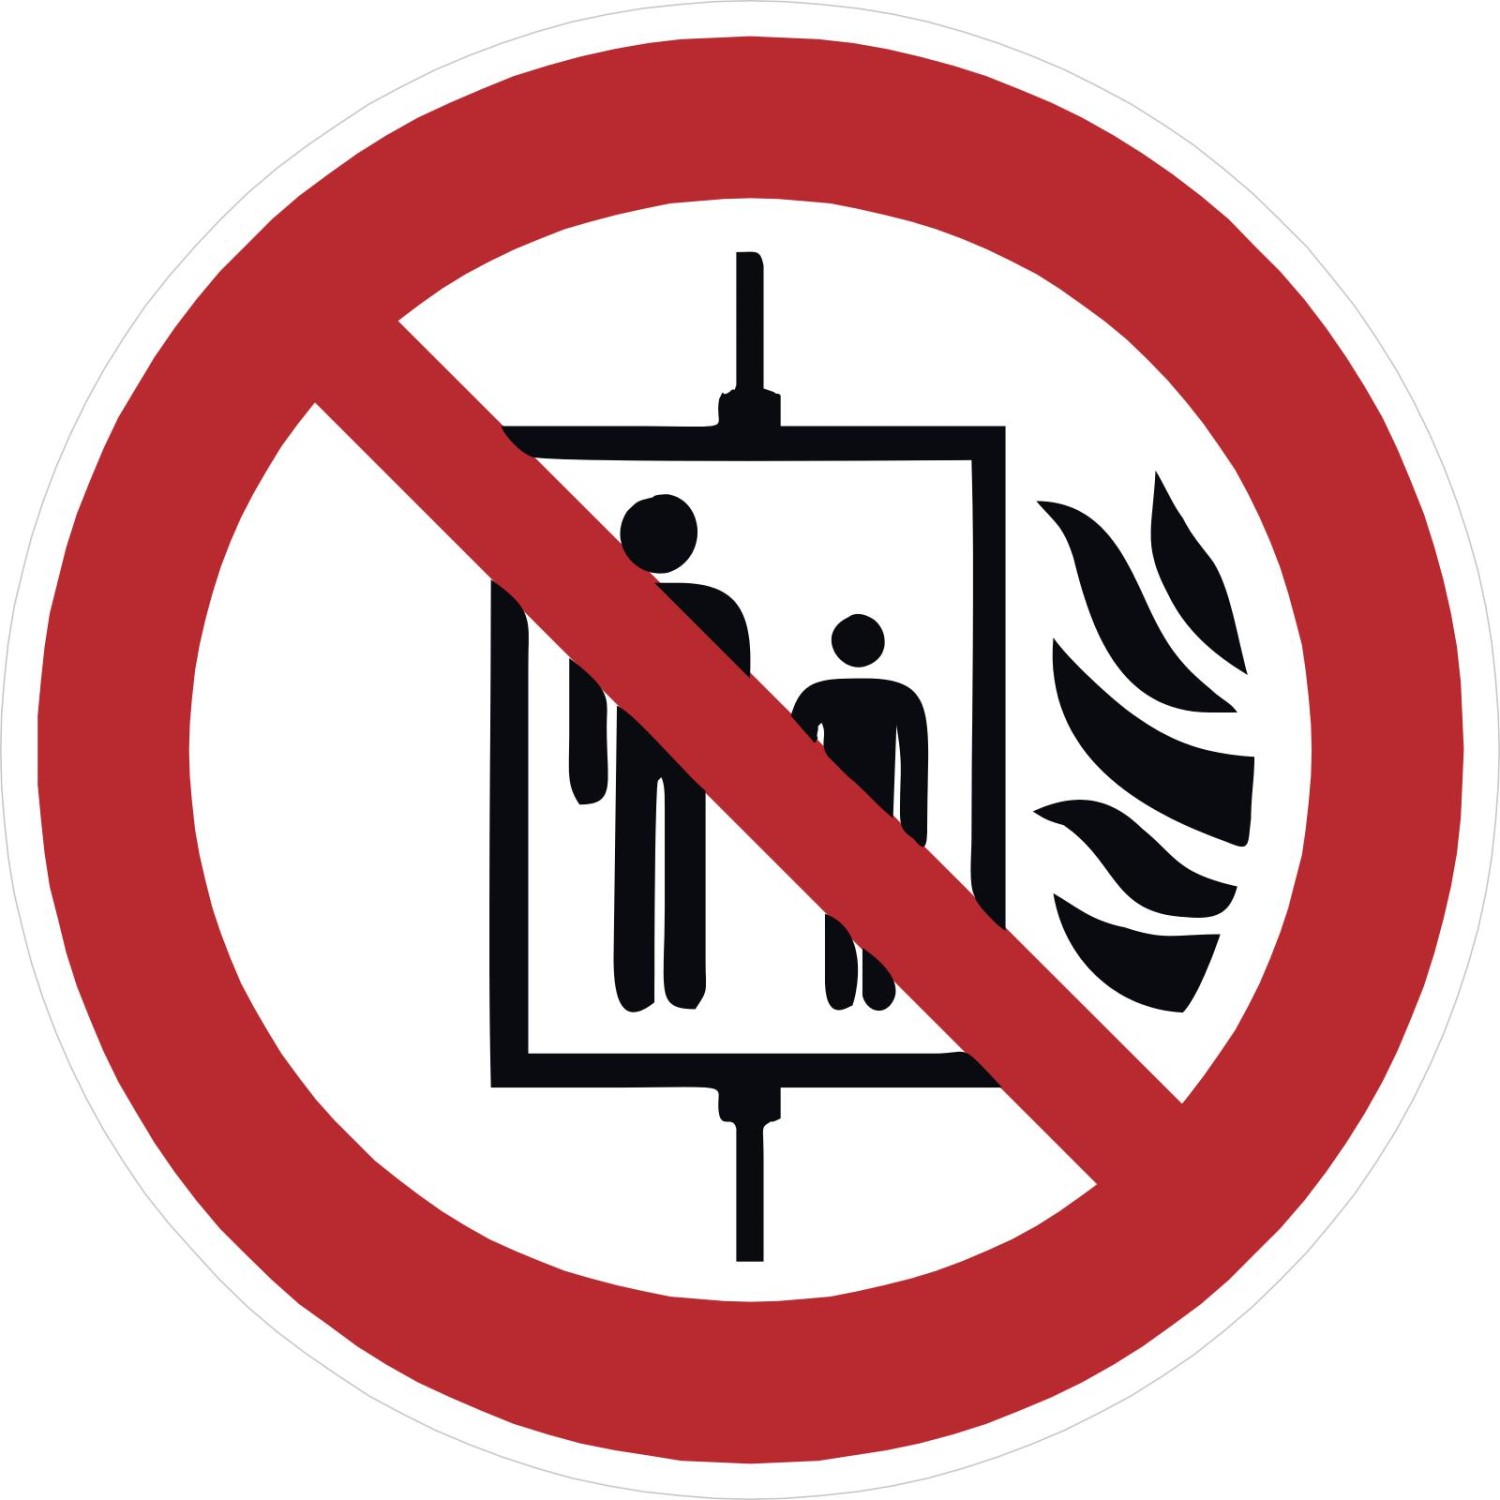 Aufkleber Aufzug im Brandfall nicht benutzen P020 (Material und Größe: 20 Stück Aufkleber 5 cm)